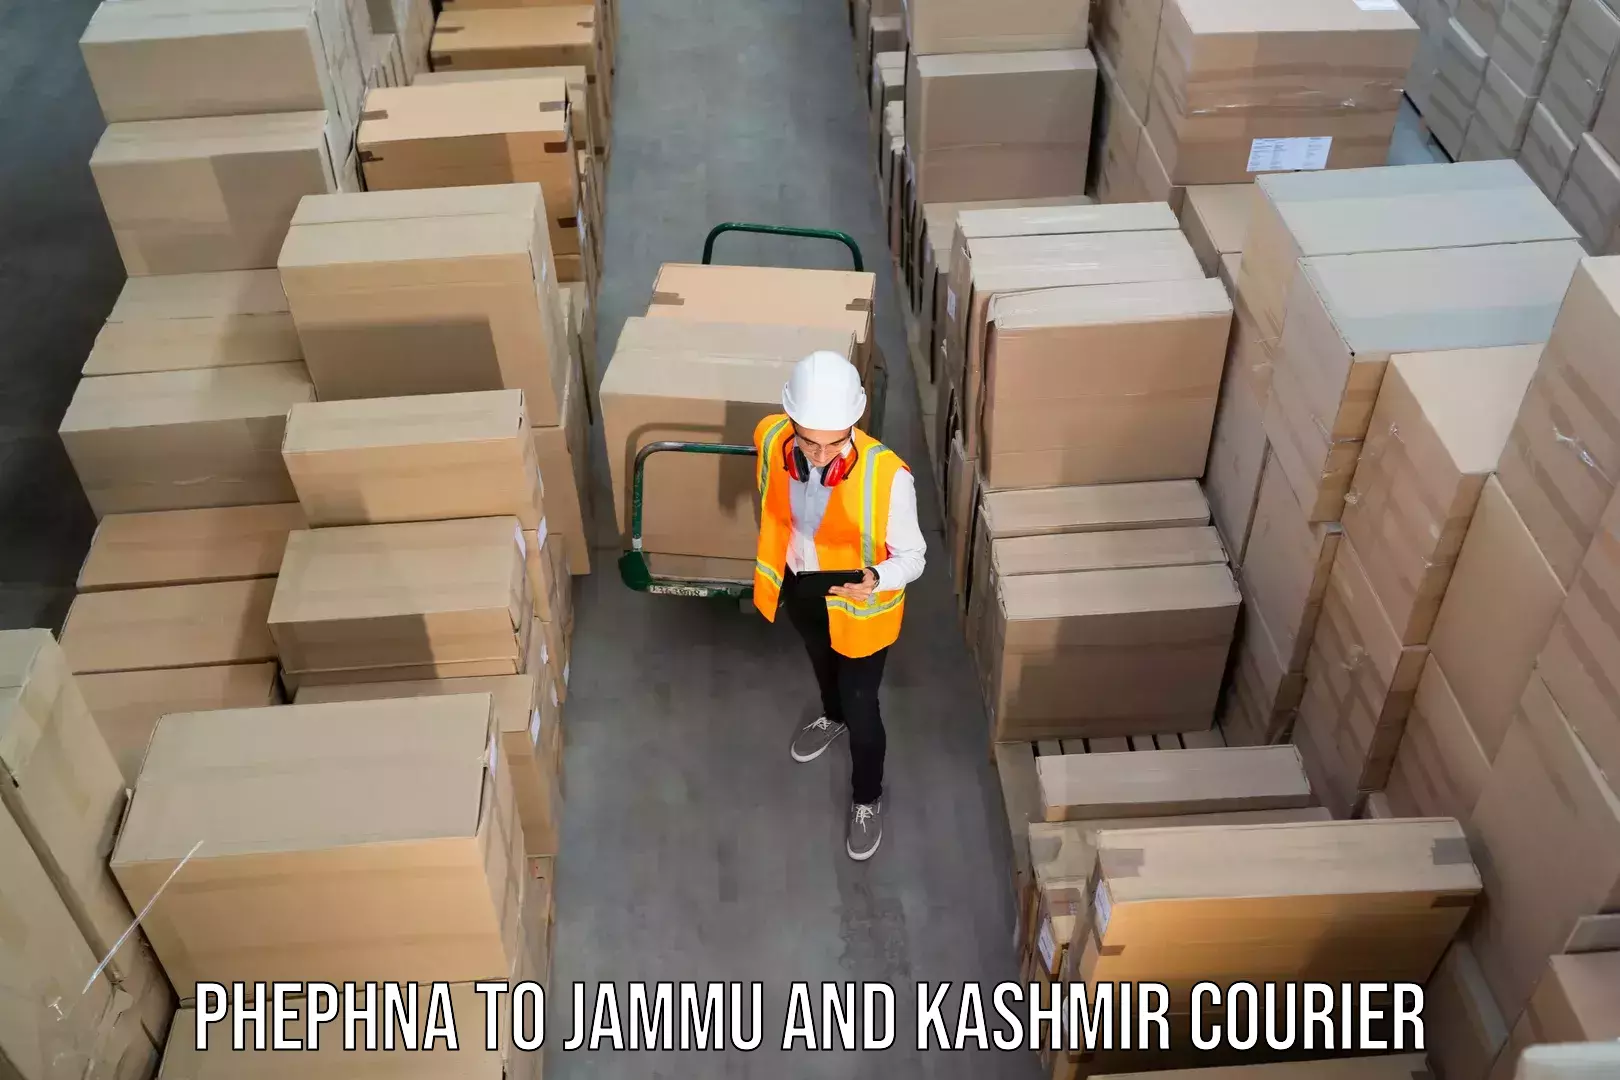 Bulk order courier Phephna to Kargil